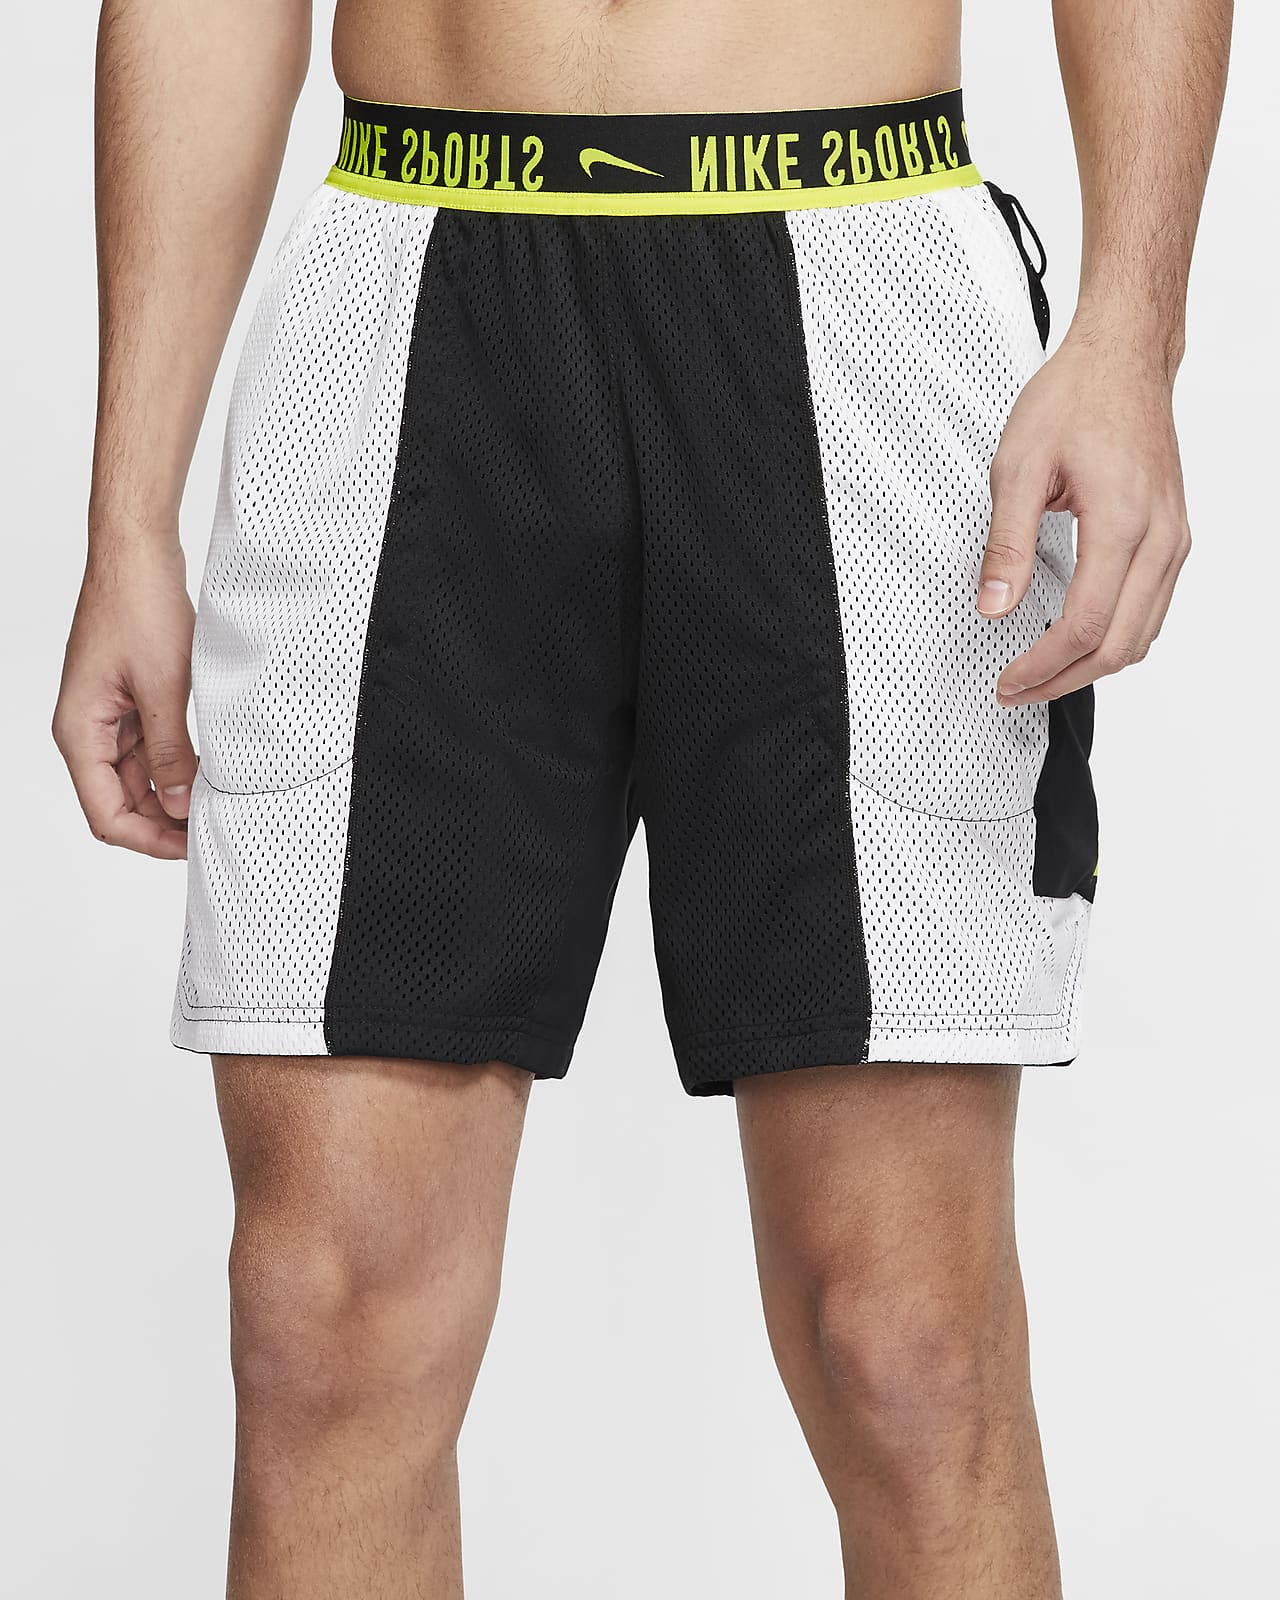 Reversible Training Shorts. Nike 